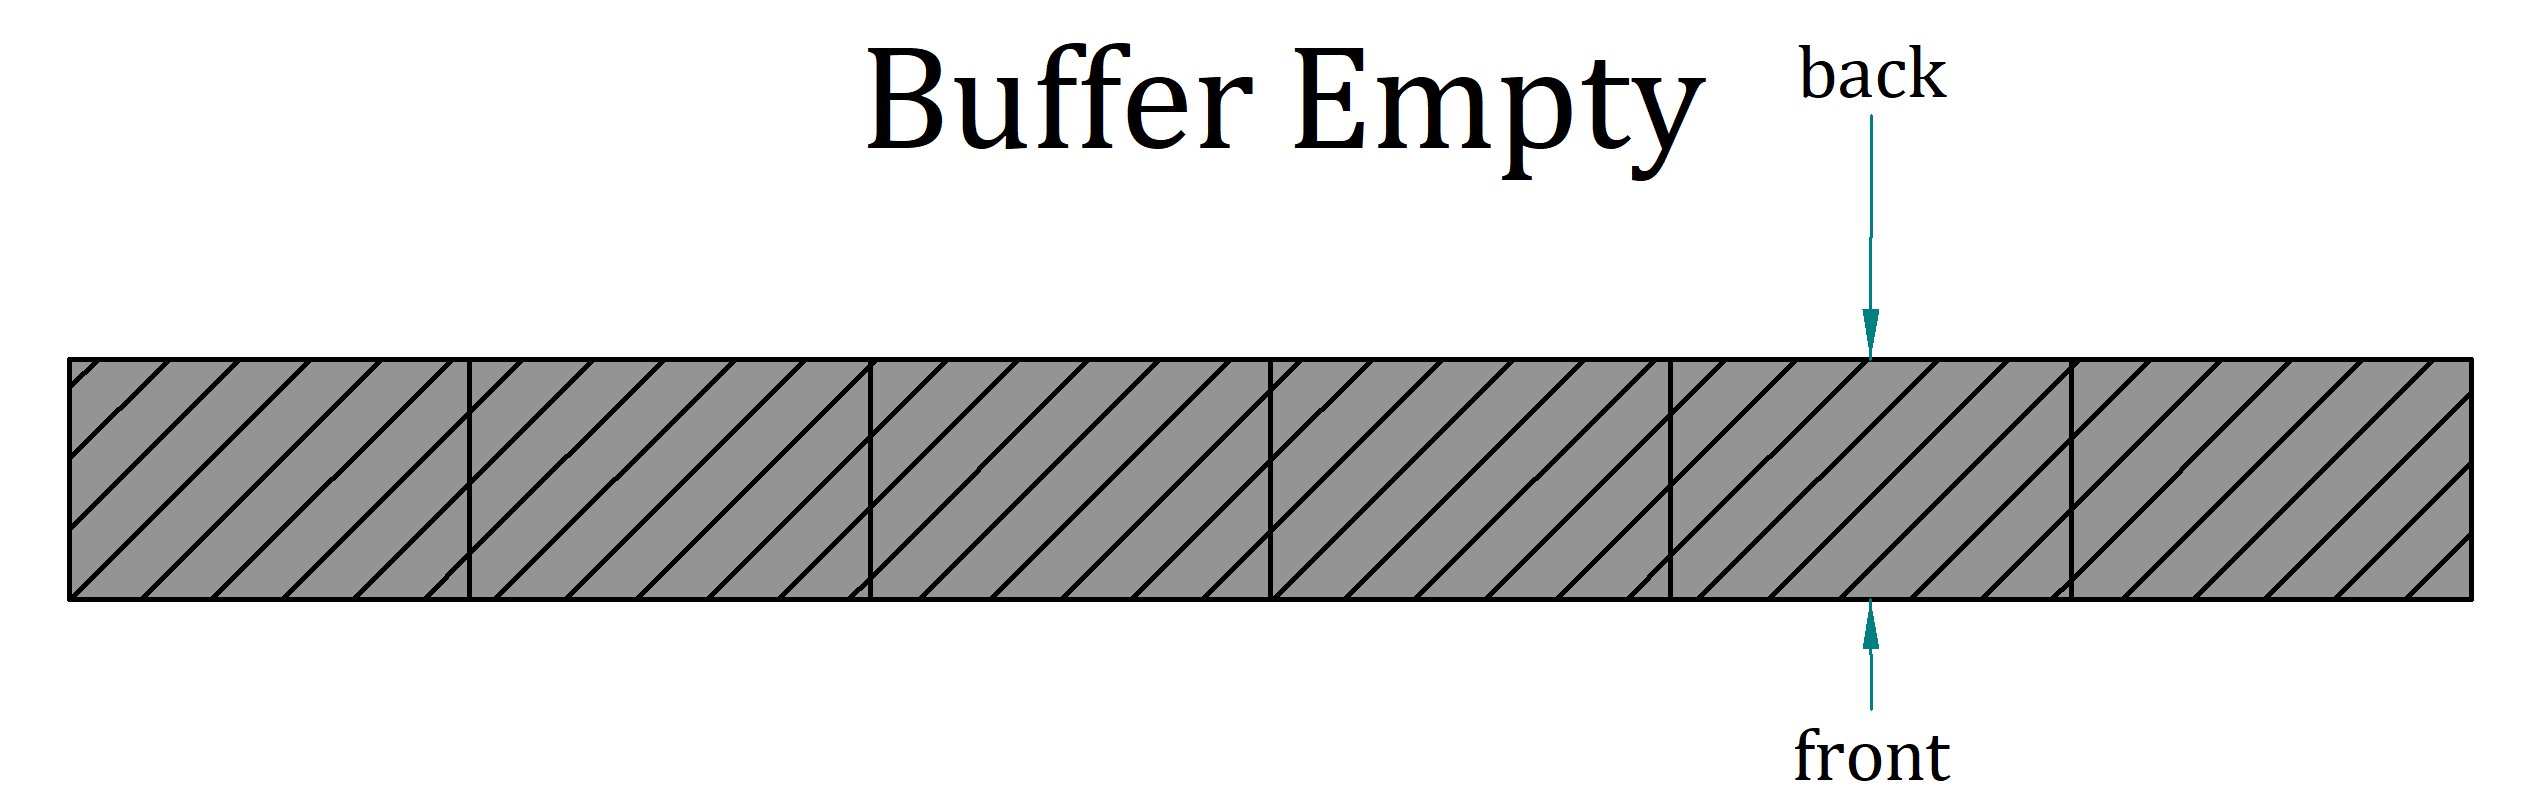 Buffer Empty